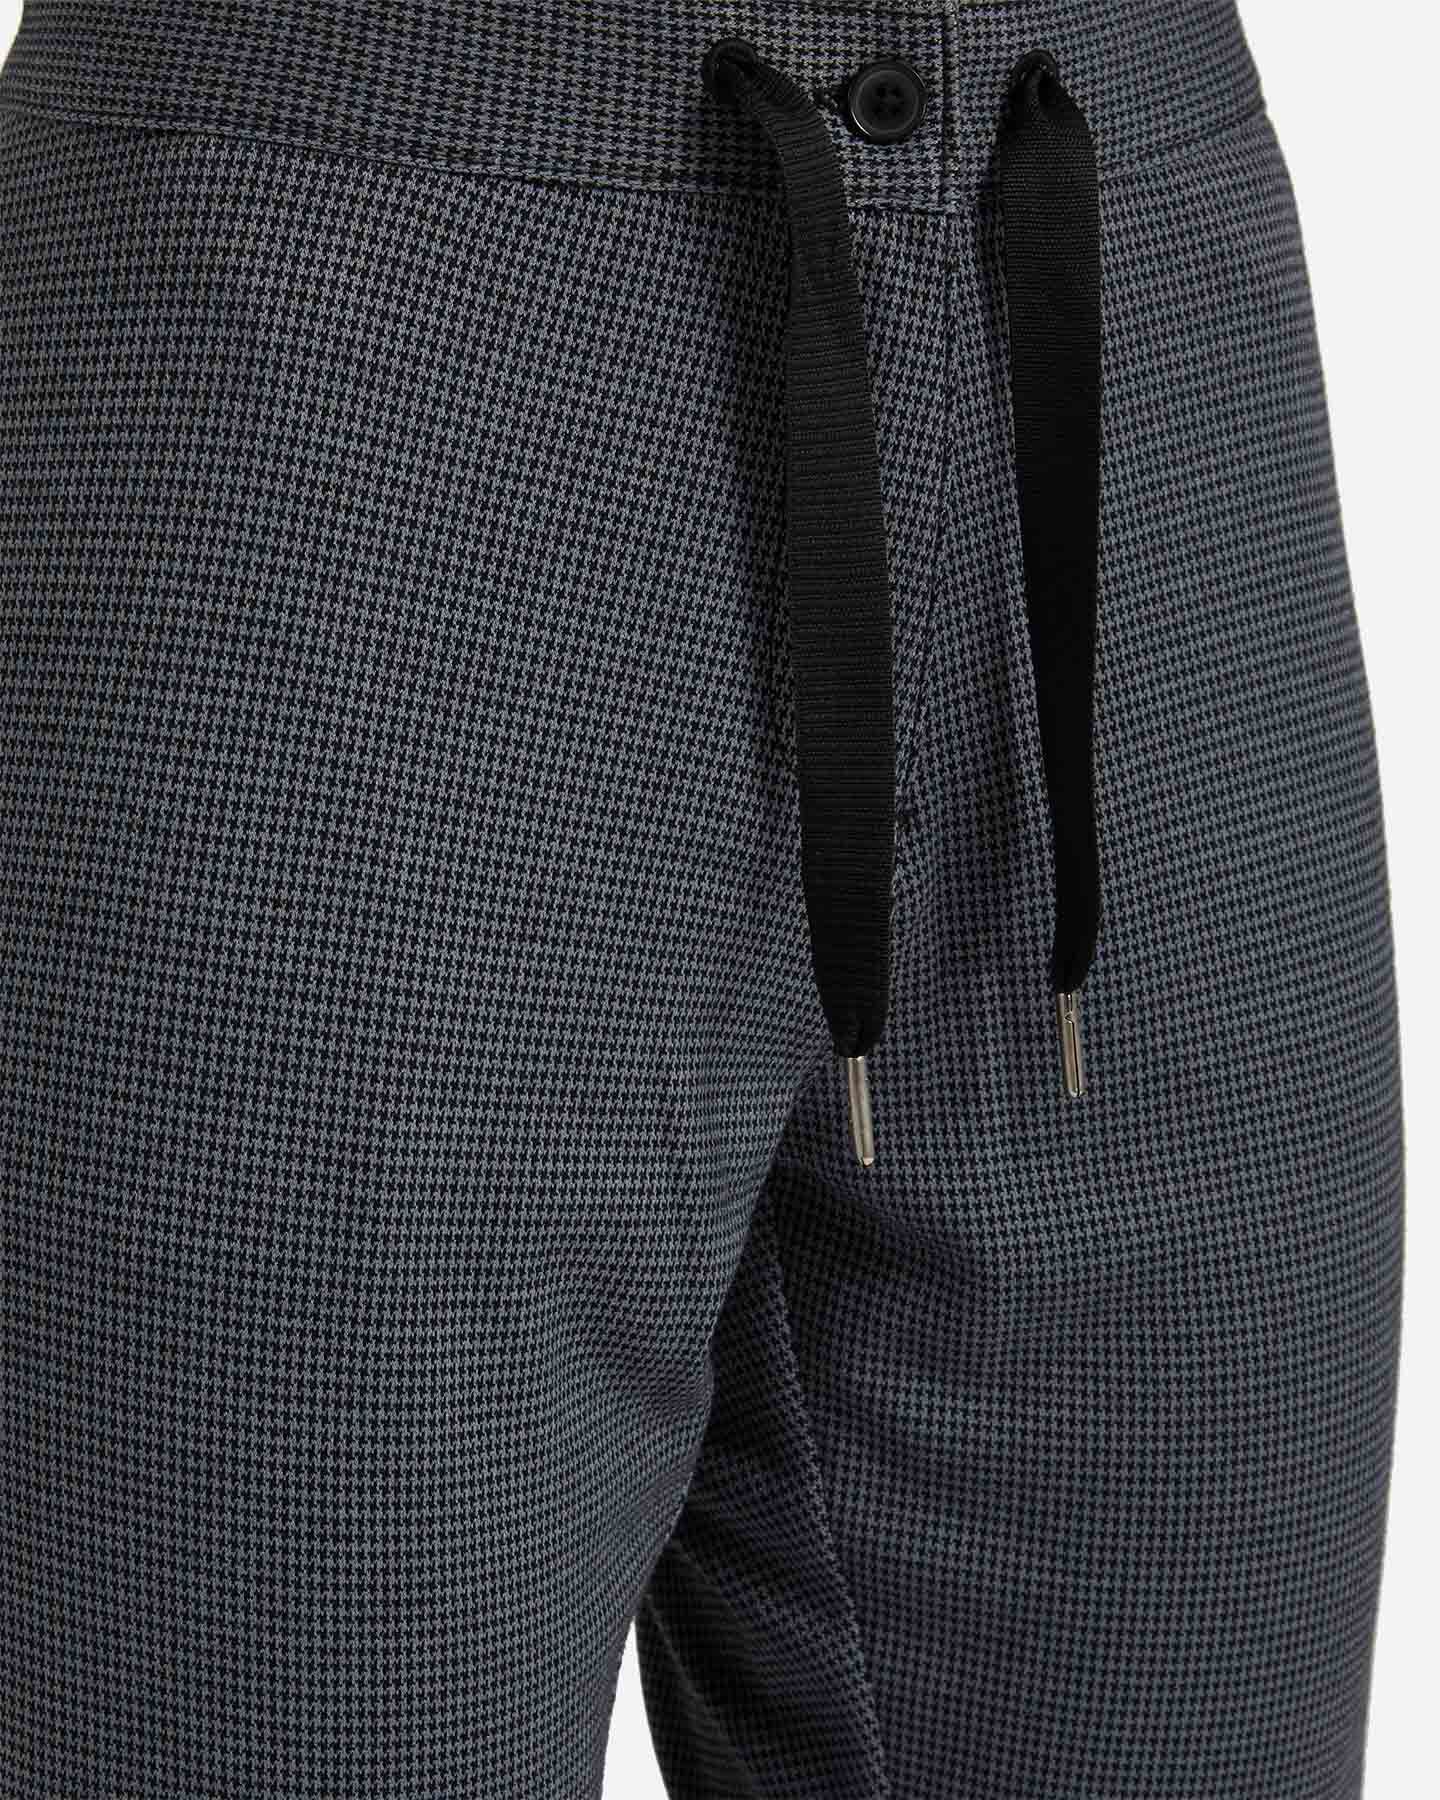  Pantalone DACK'S PIED POULE W S4094534|896|S scatto 3